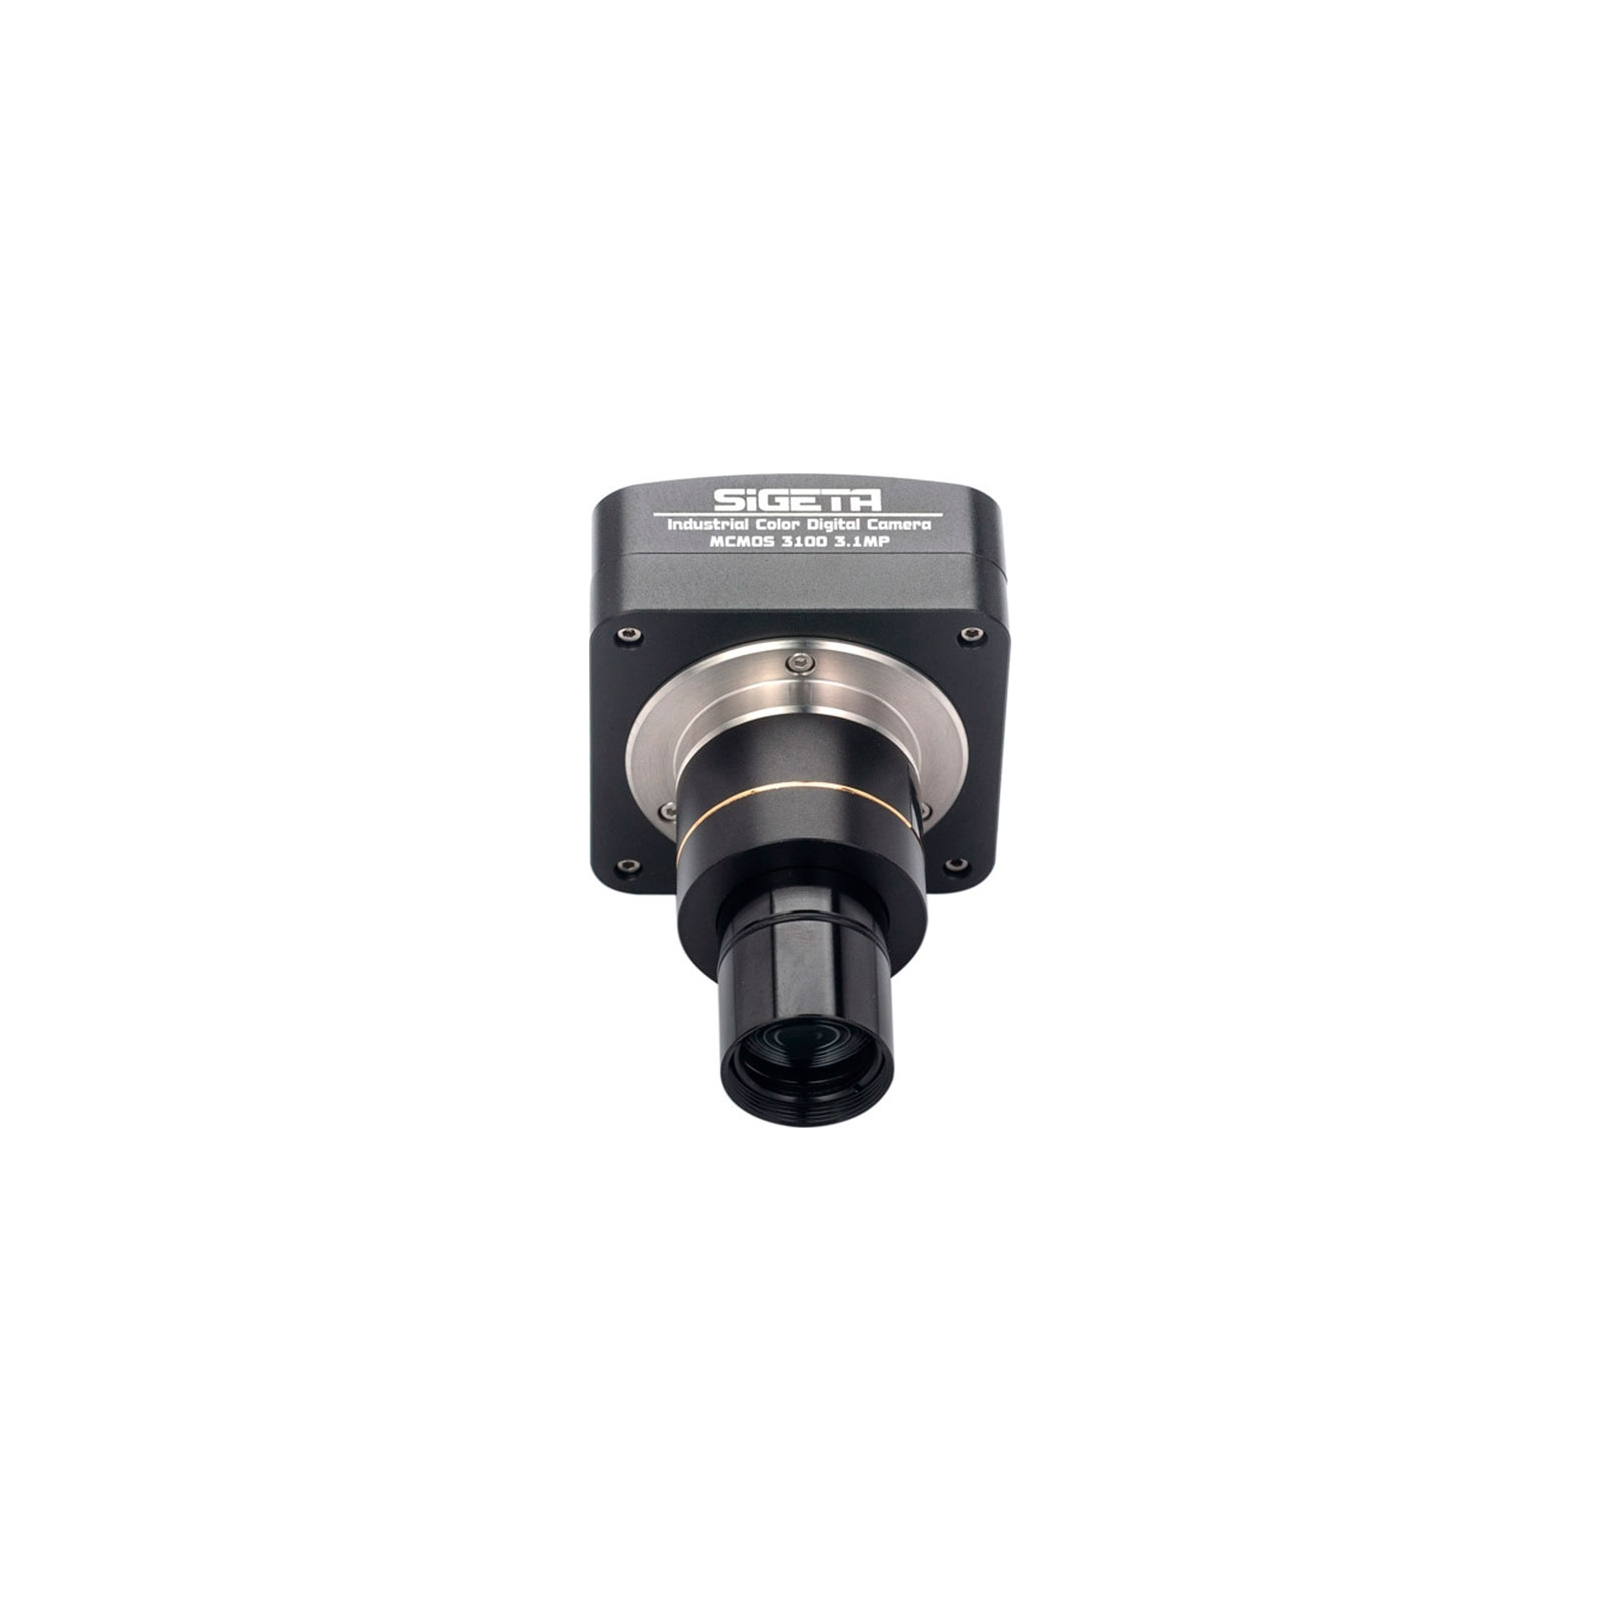 Цифровая камера для микроскопа Sigeta MCMOS 3100 3.1MP USB2.0 (65672) изображение 3